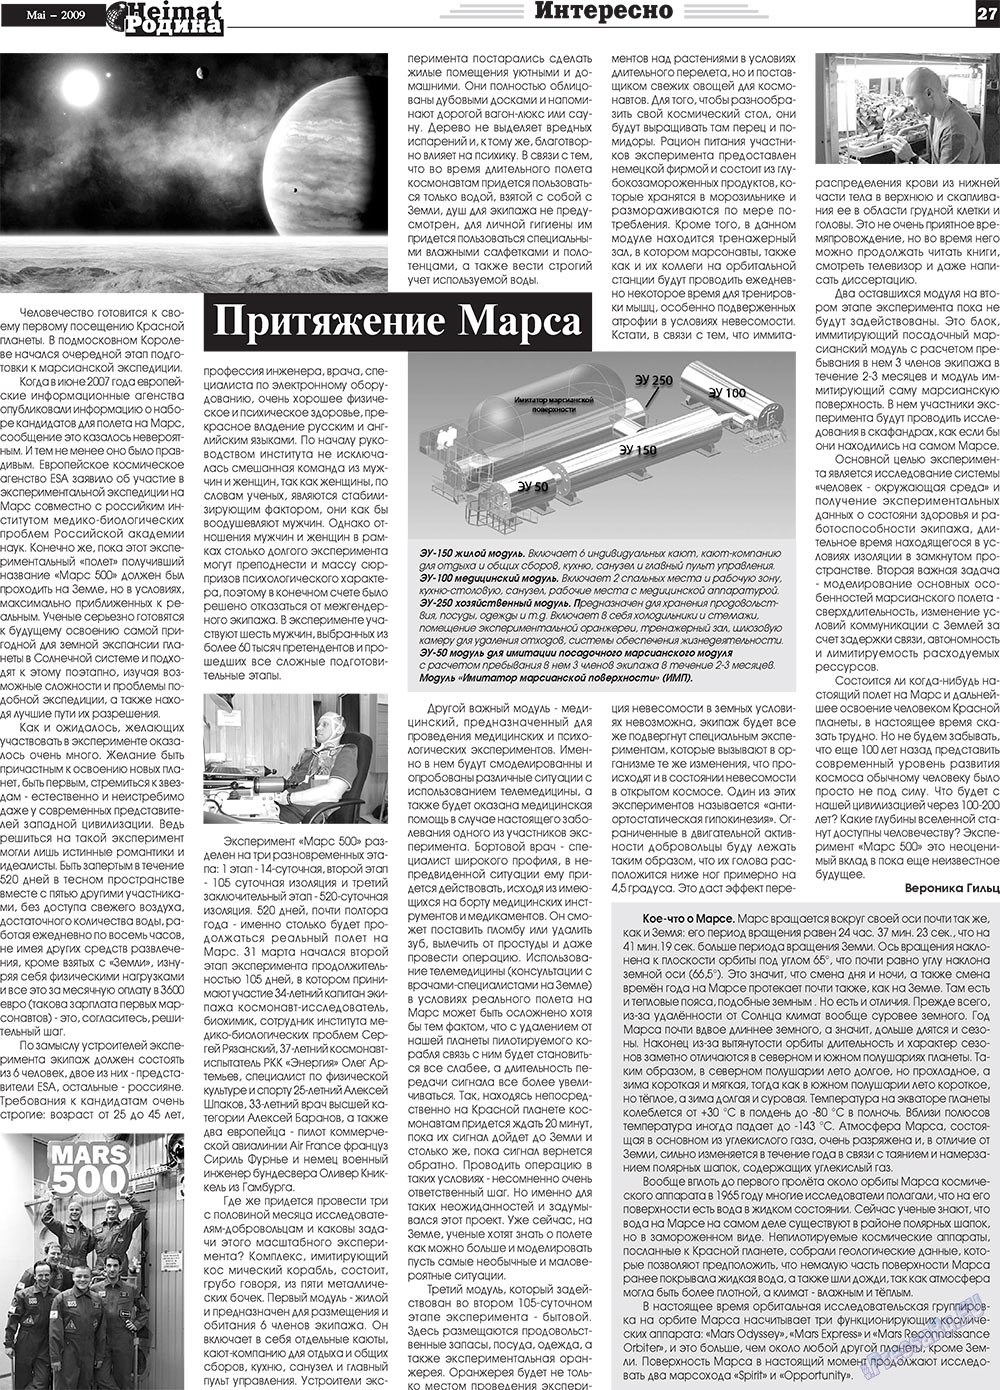 Heimat-Родина (газета). 2009 год, номер 5, стр. 27